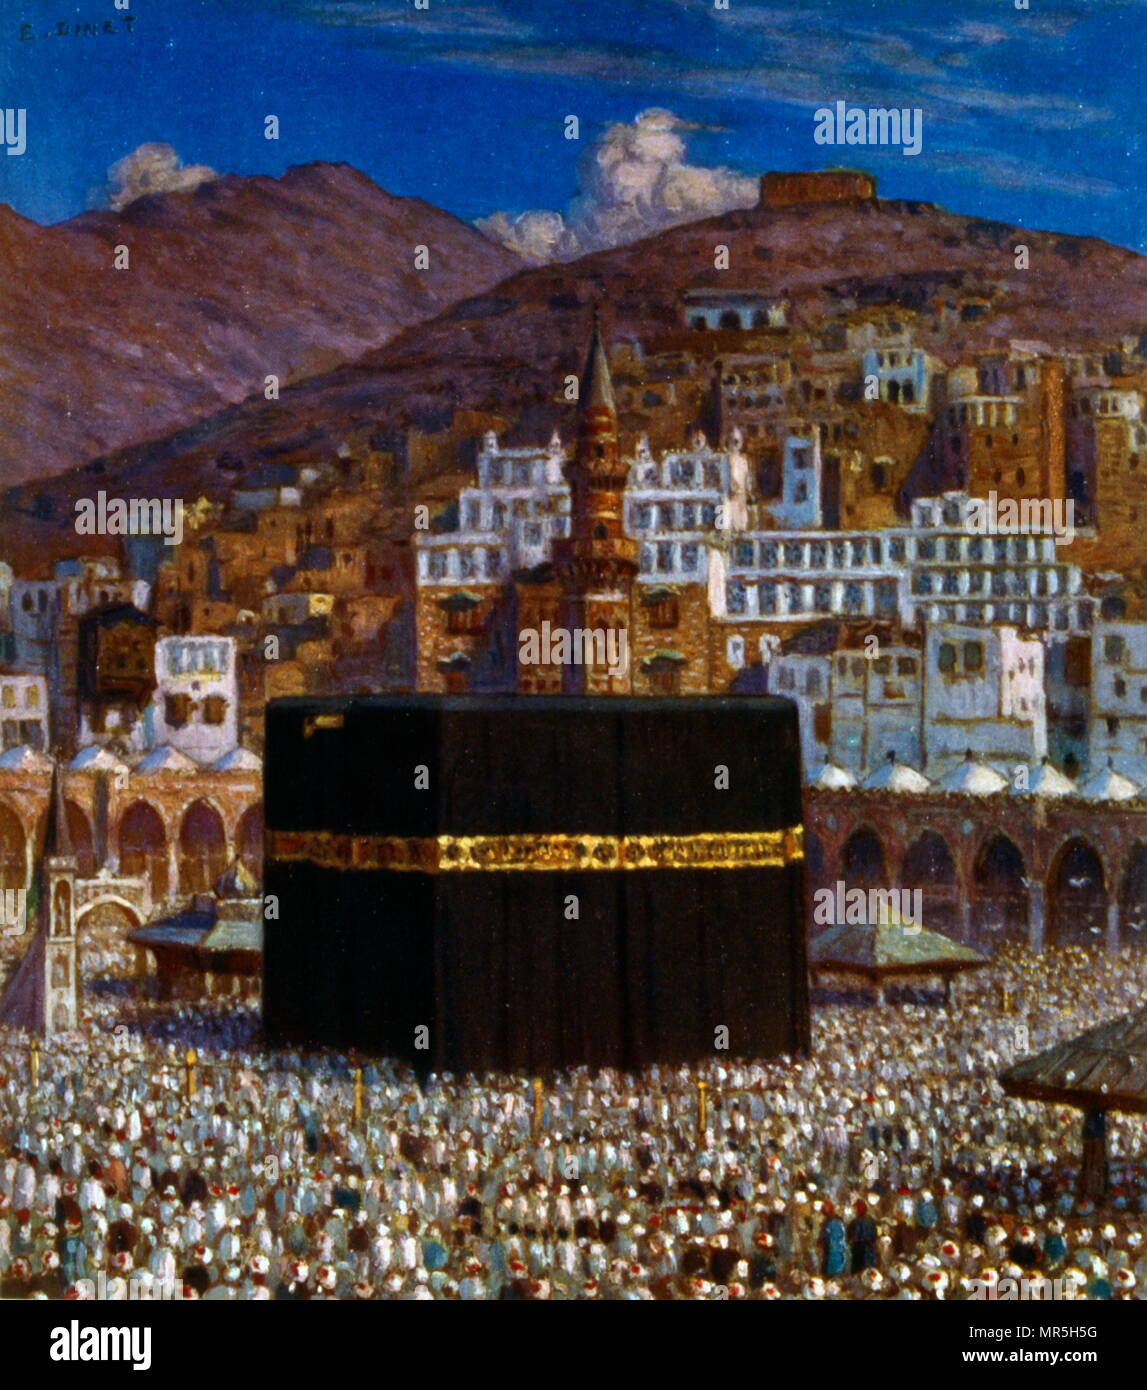 Peregrinos musulmanes a Kabbah en la Meca, por Nasreddine (Alphonse-Étienne Dinet Dinet); 1861 - 1929, un Pintor orientalista francés; 1918. La Meca es el sitio más sagrado en el Islam. Es considerado por los musulmanes como el bayt Allāh, la "Casa de Dios". Los musulmanes se espera hacer frente a la Kaaba al realizar el salat (oración). Uno de los cinco pilares del Islam requiere que todo musulmán que esté en condiciones de hacerlo para realizar la peregrinación al menos una vez en su vida. Varias partes del hayy peregrinos requieren para realizar el tawaf, el Circumambulación siete veces alrededor de la Kaaba en el sentido contrario a las agujas del reloj. Foto de stock